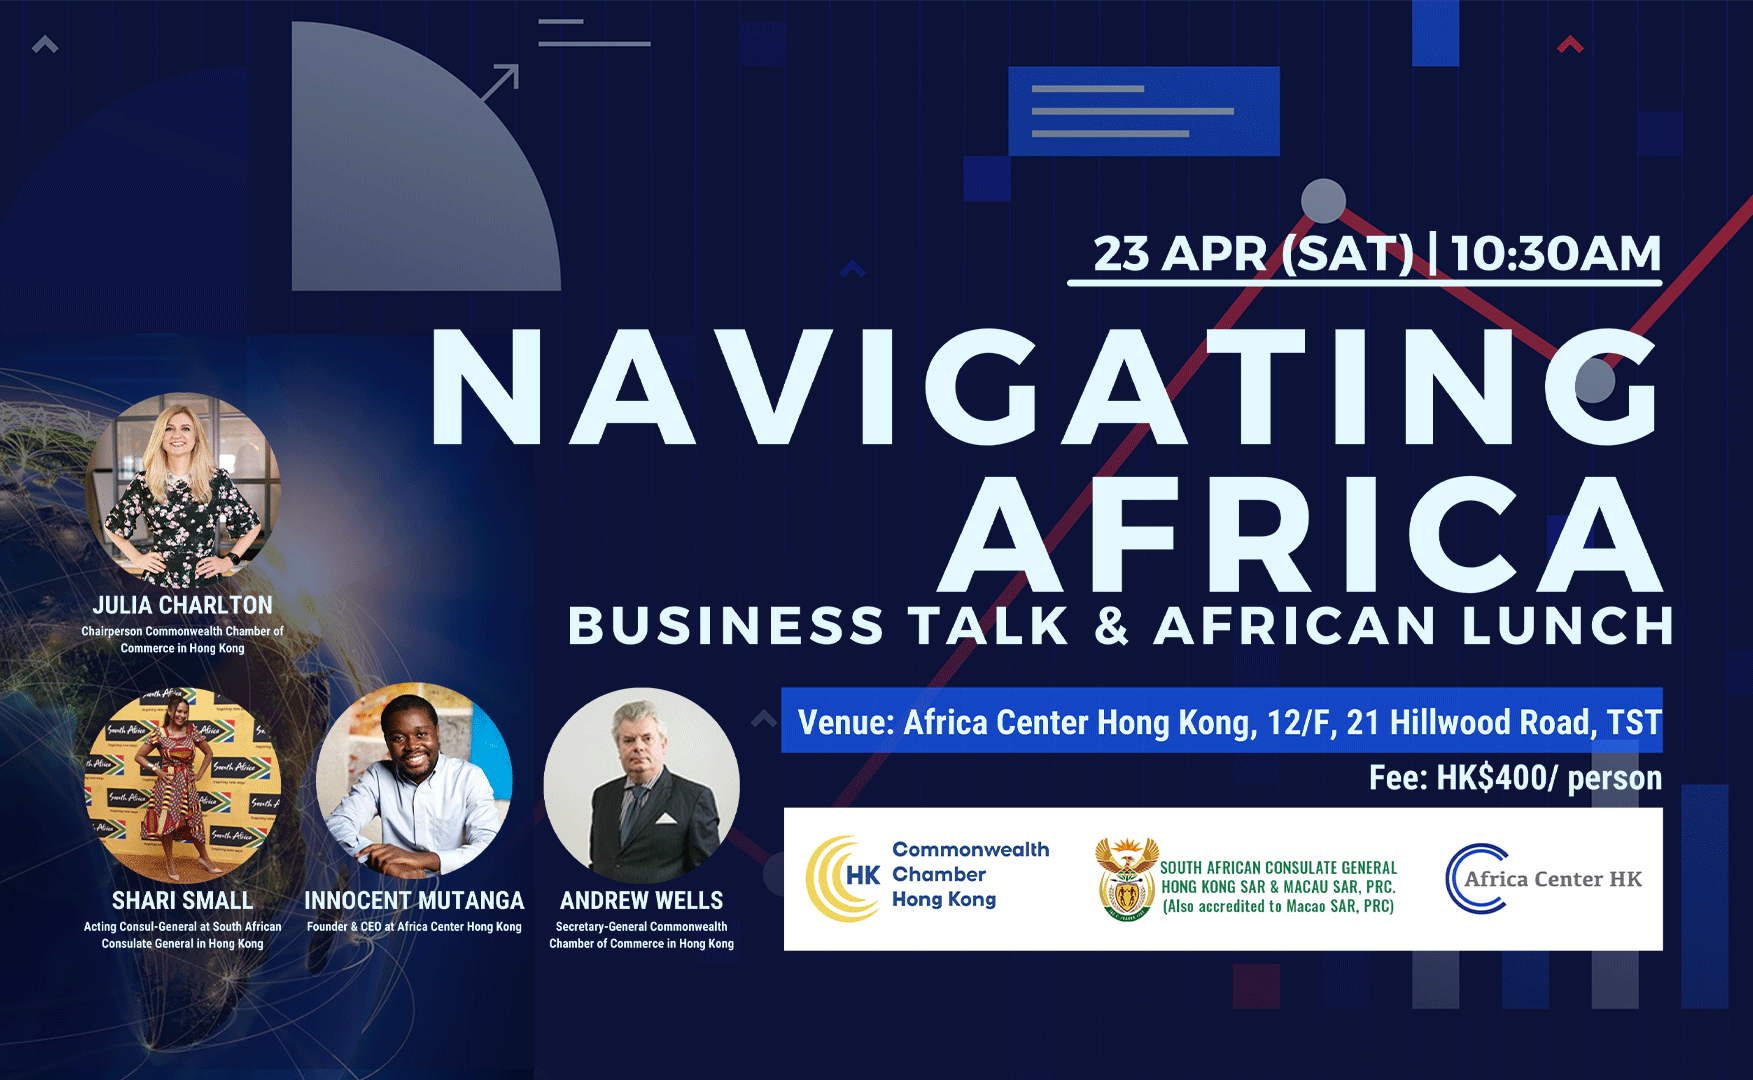 Navigating Africa Business Talk & African Buffet Lunch